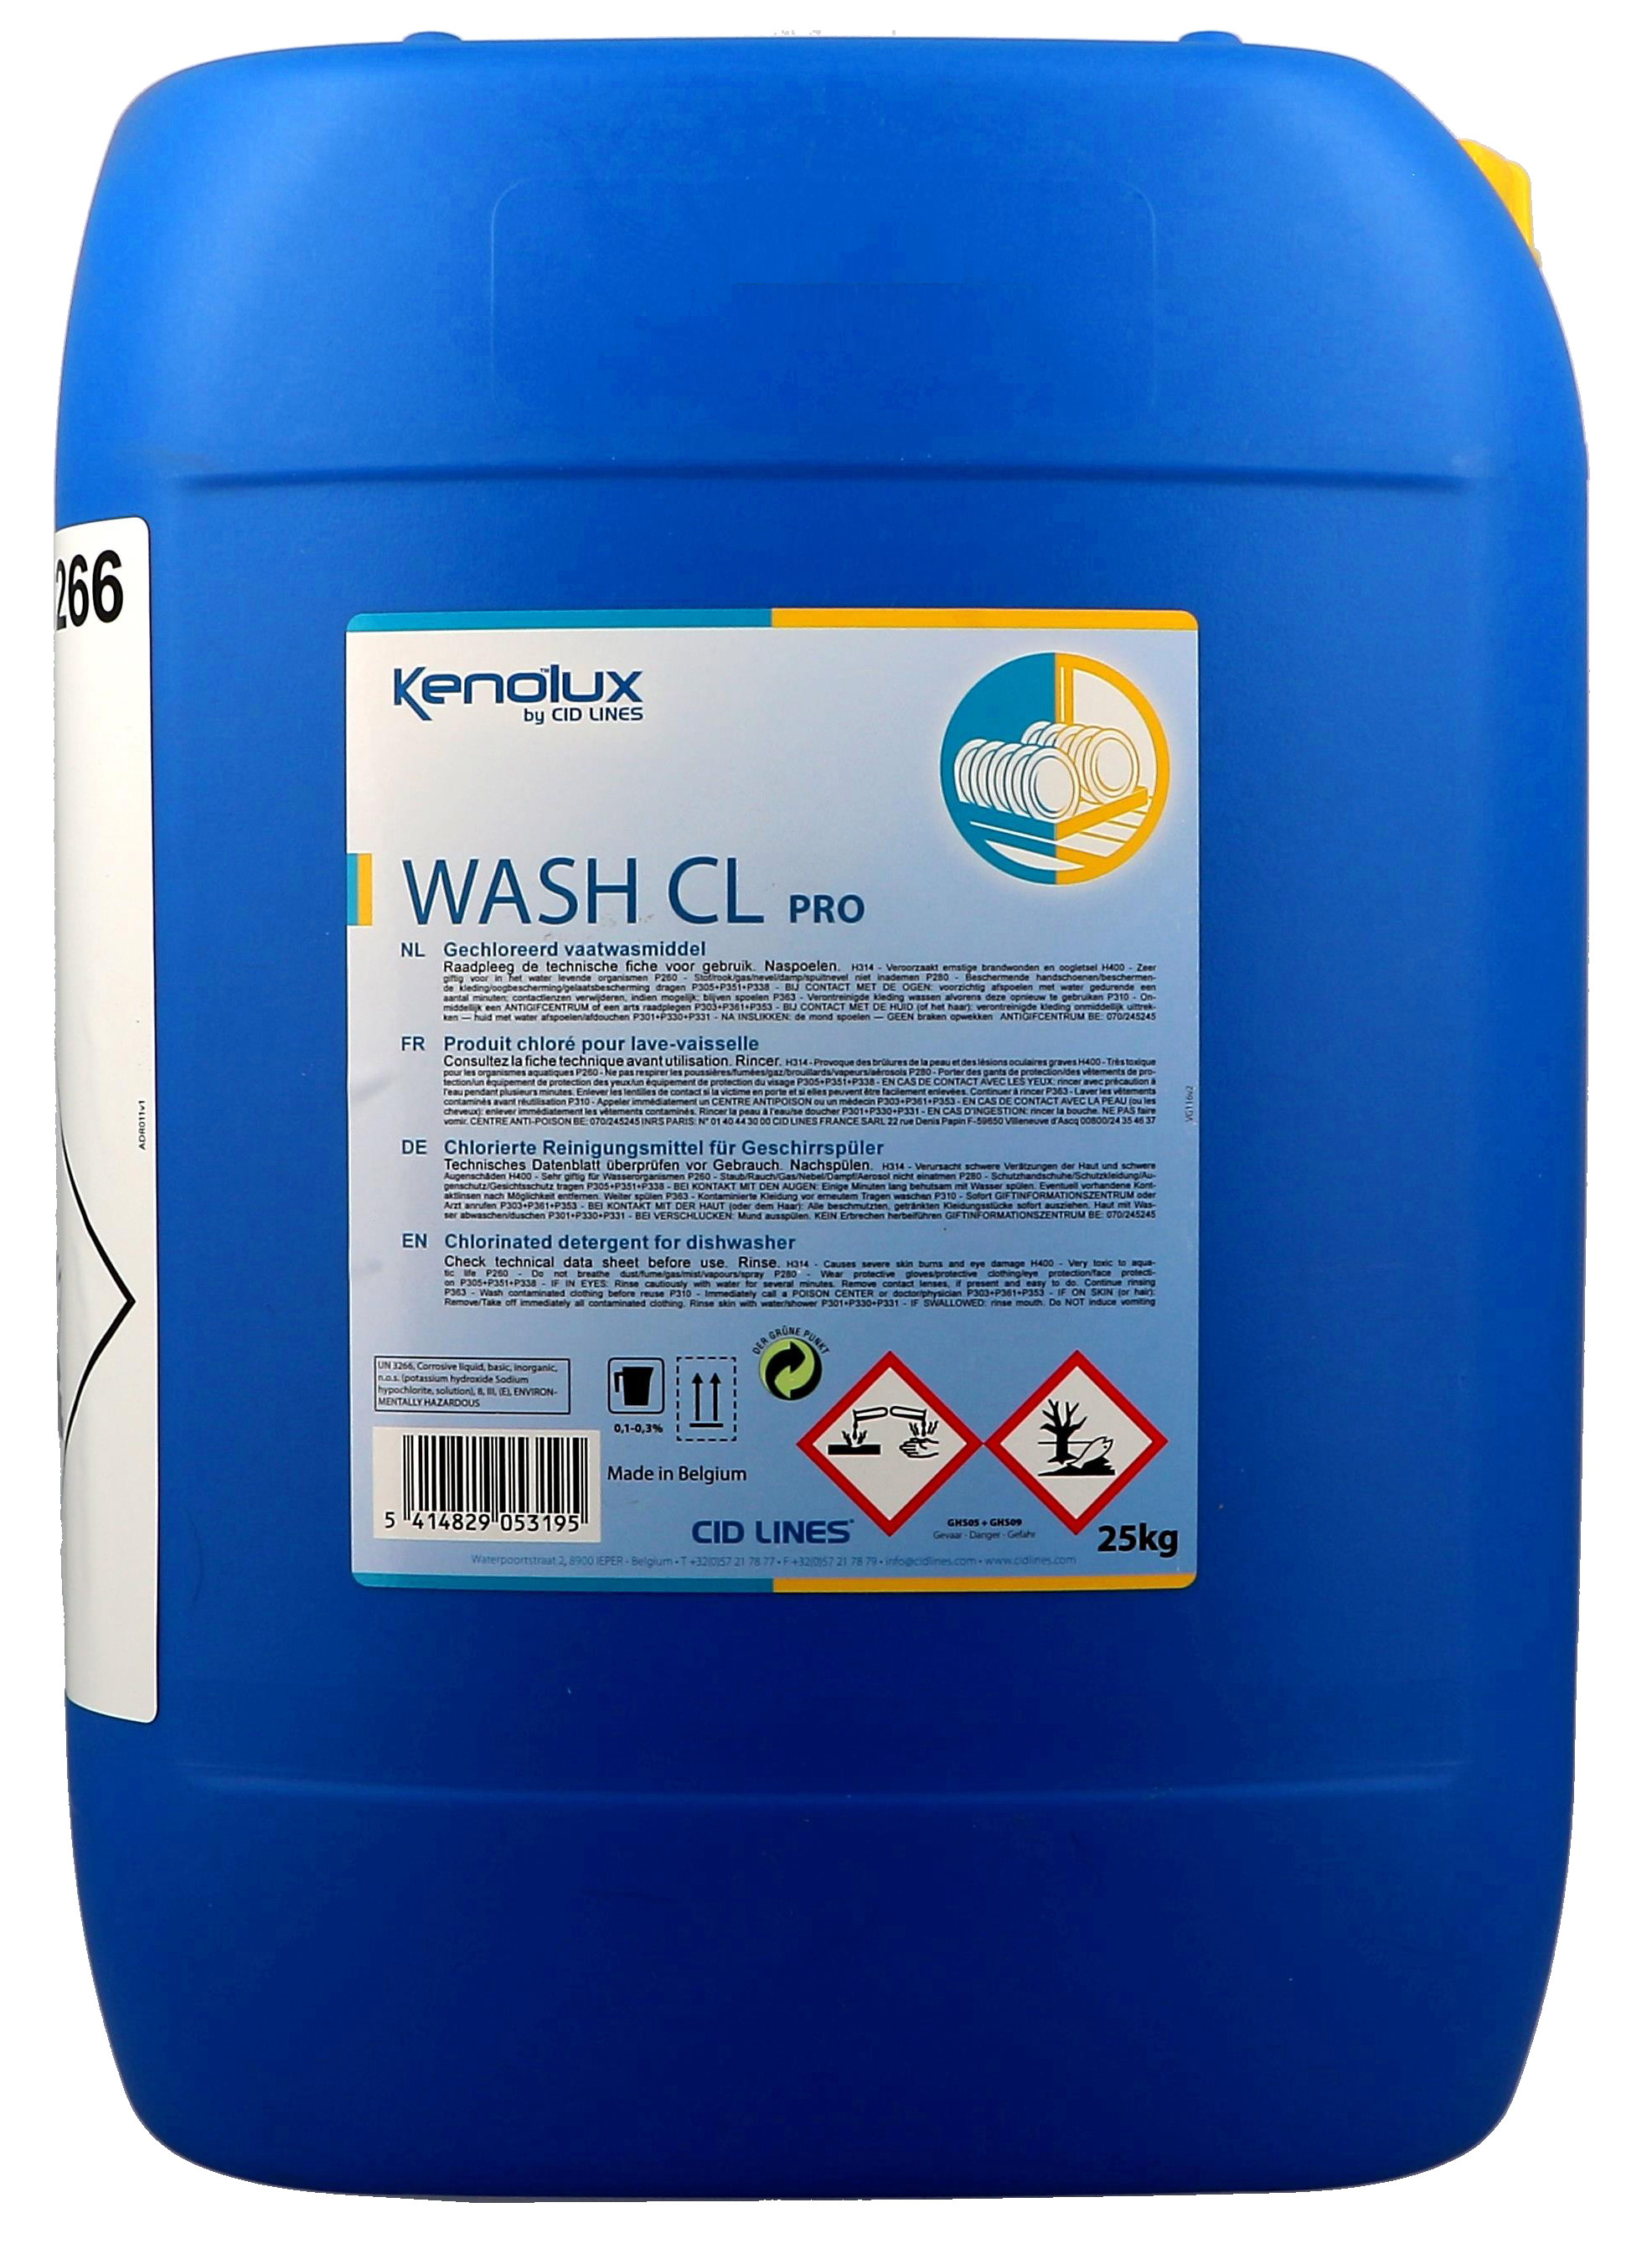 Kenolux Wash CL 25kg liquide pour lave-vaisselle chloré Cid Lines (Vaatwasproducten)